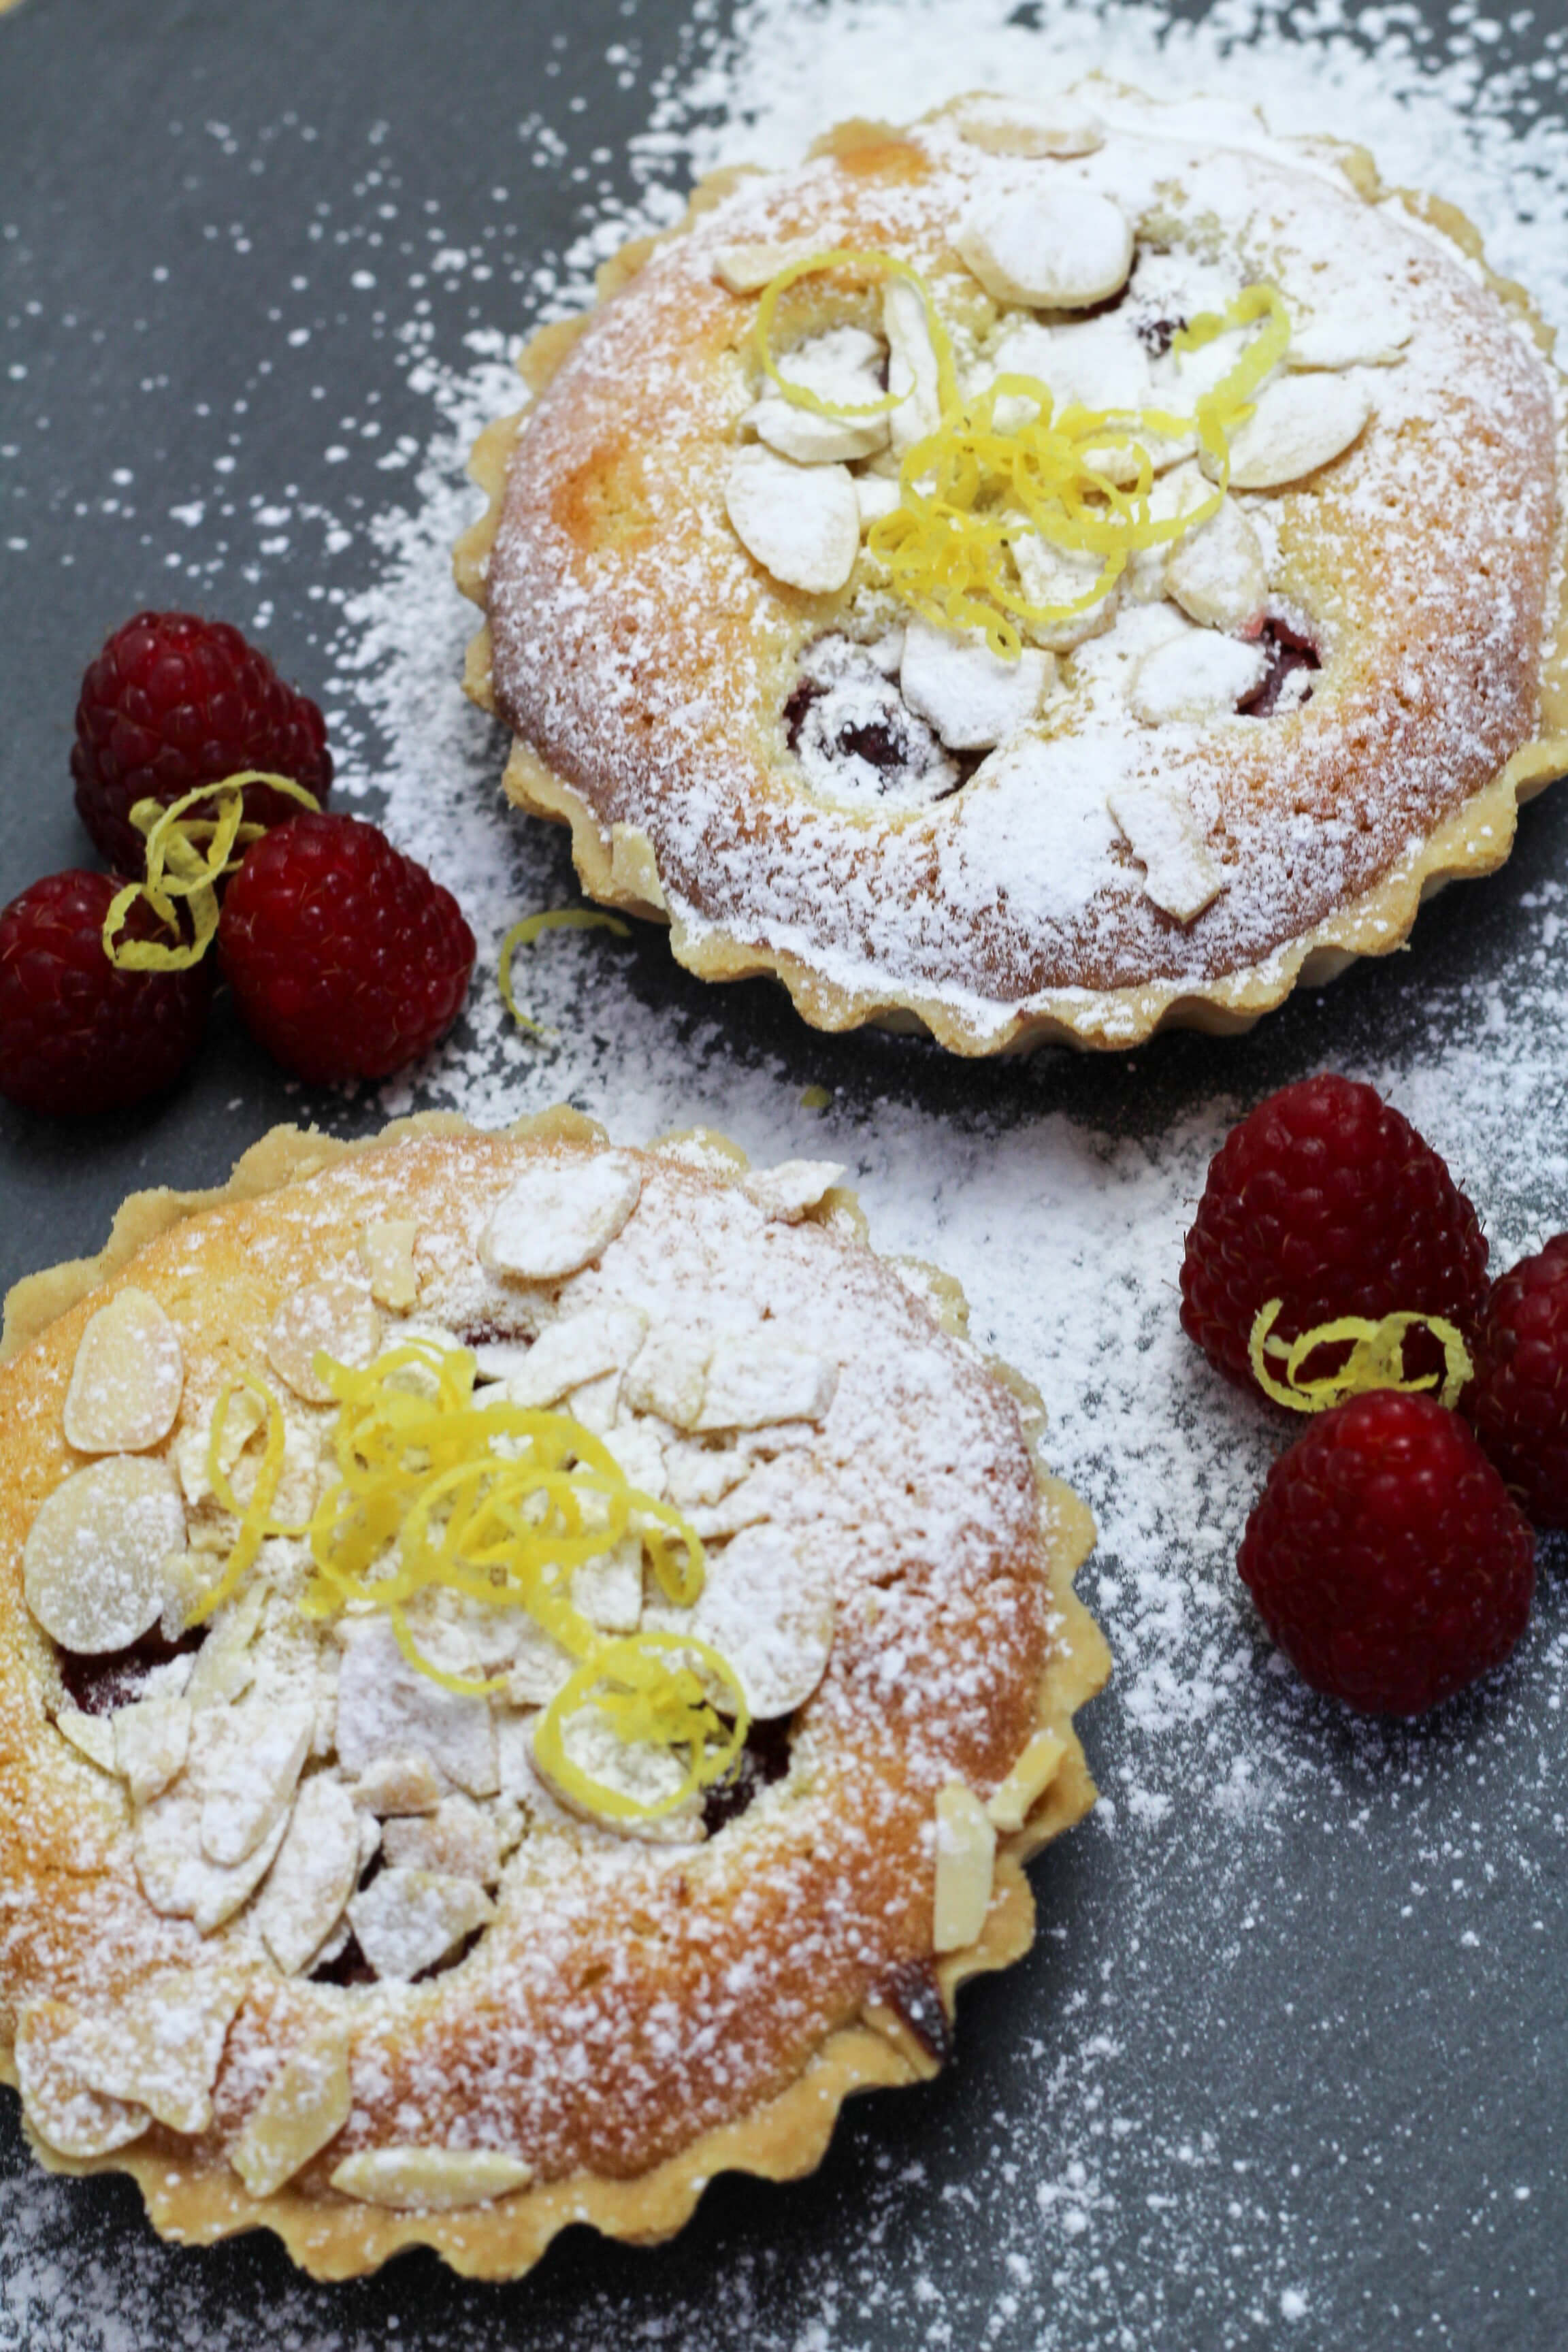 Raspberry and Lemon Bakewell tart